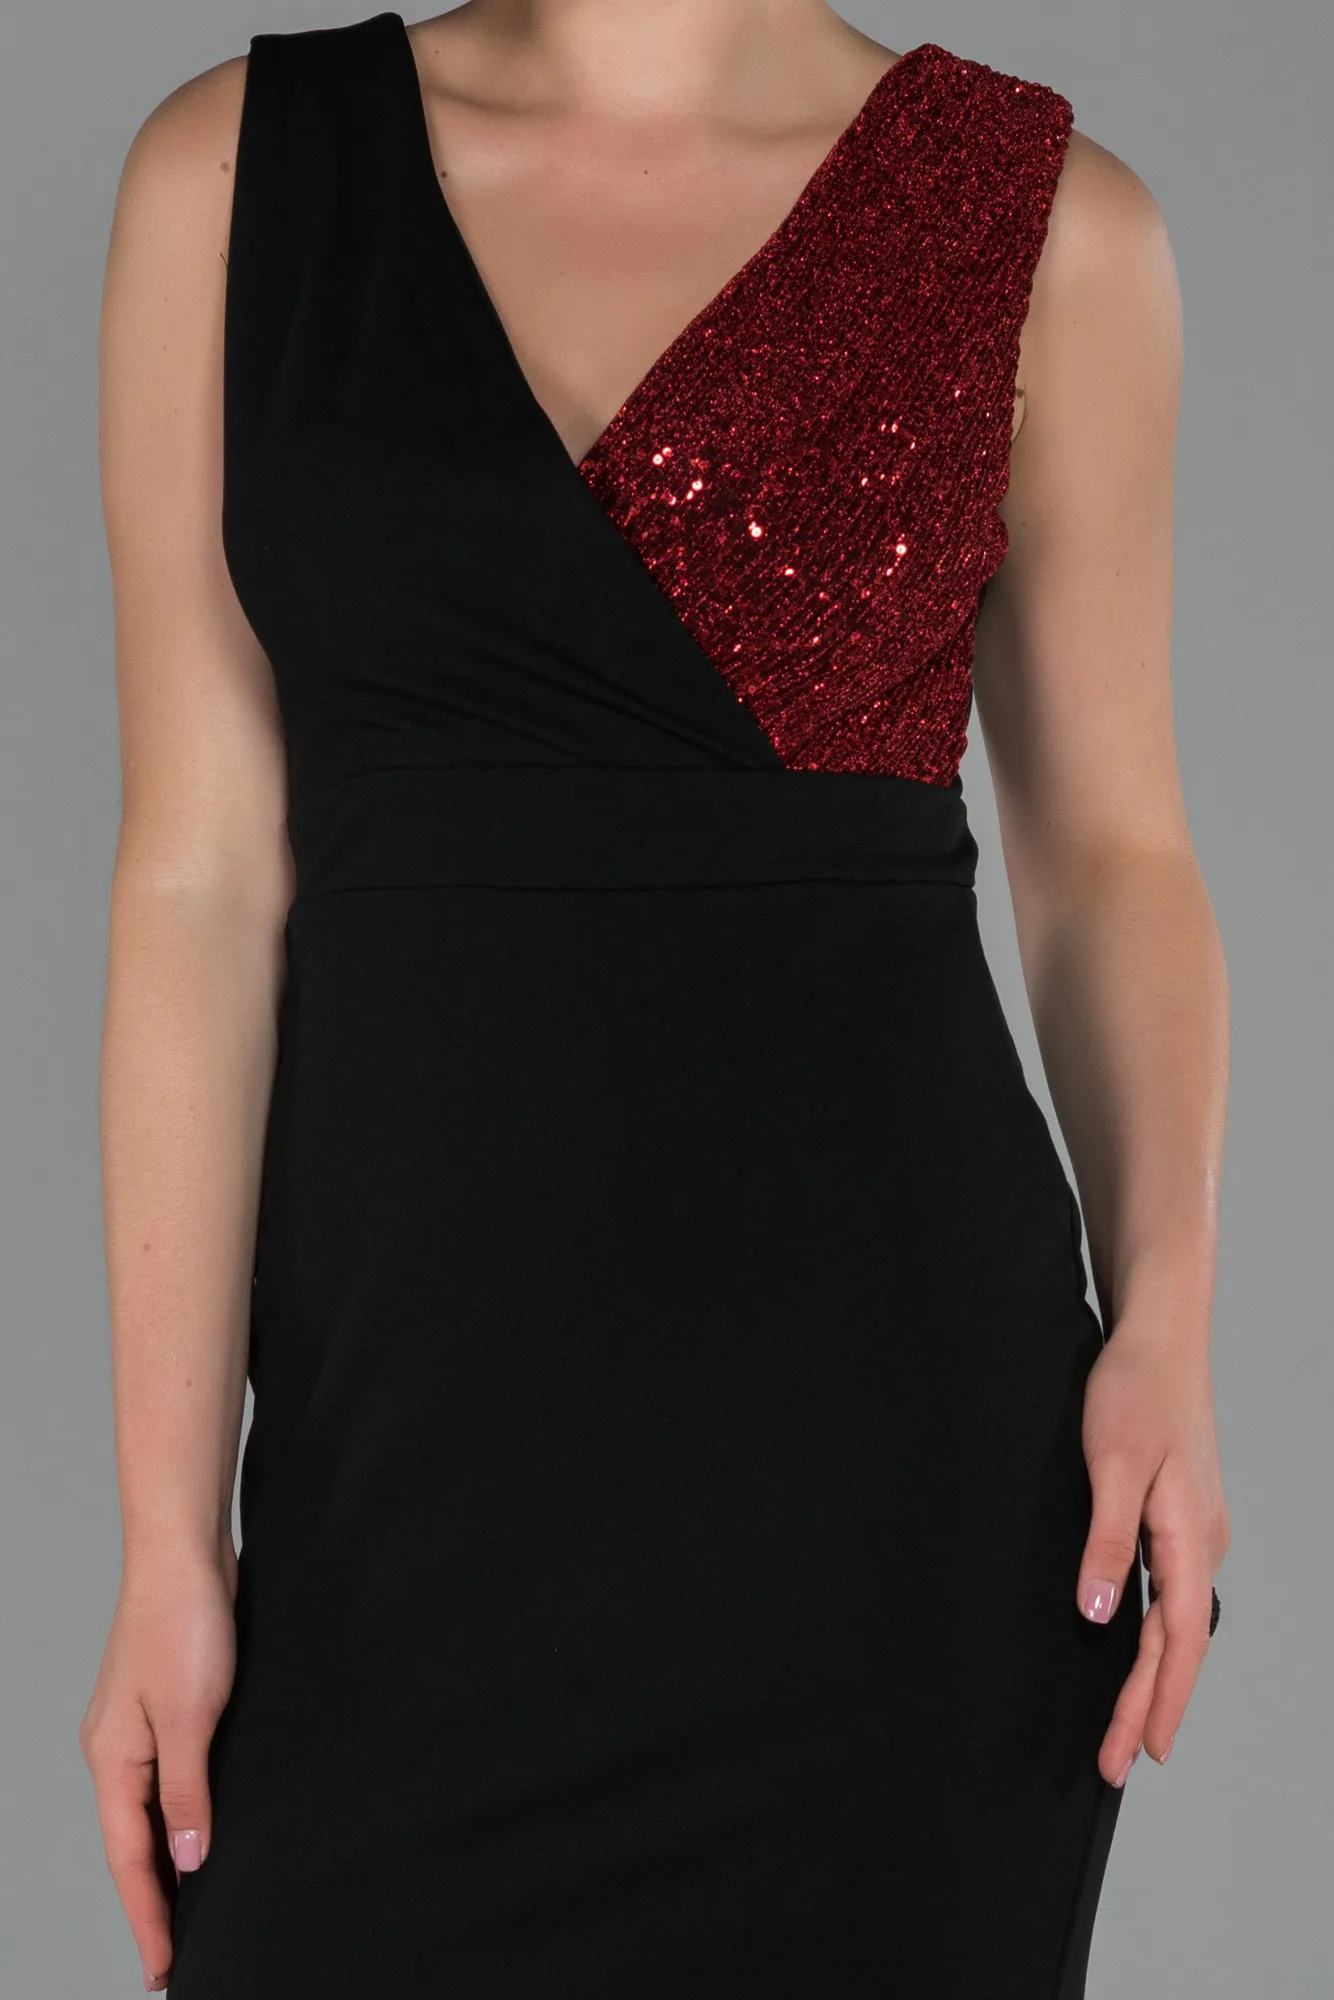 Black-Red-Long Evening Dress ABU1190